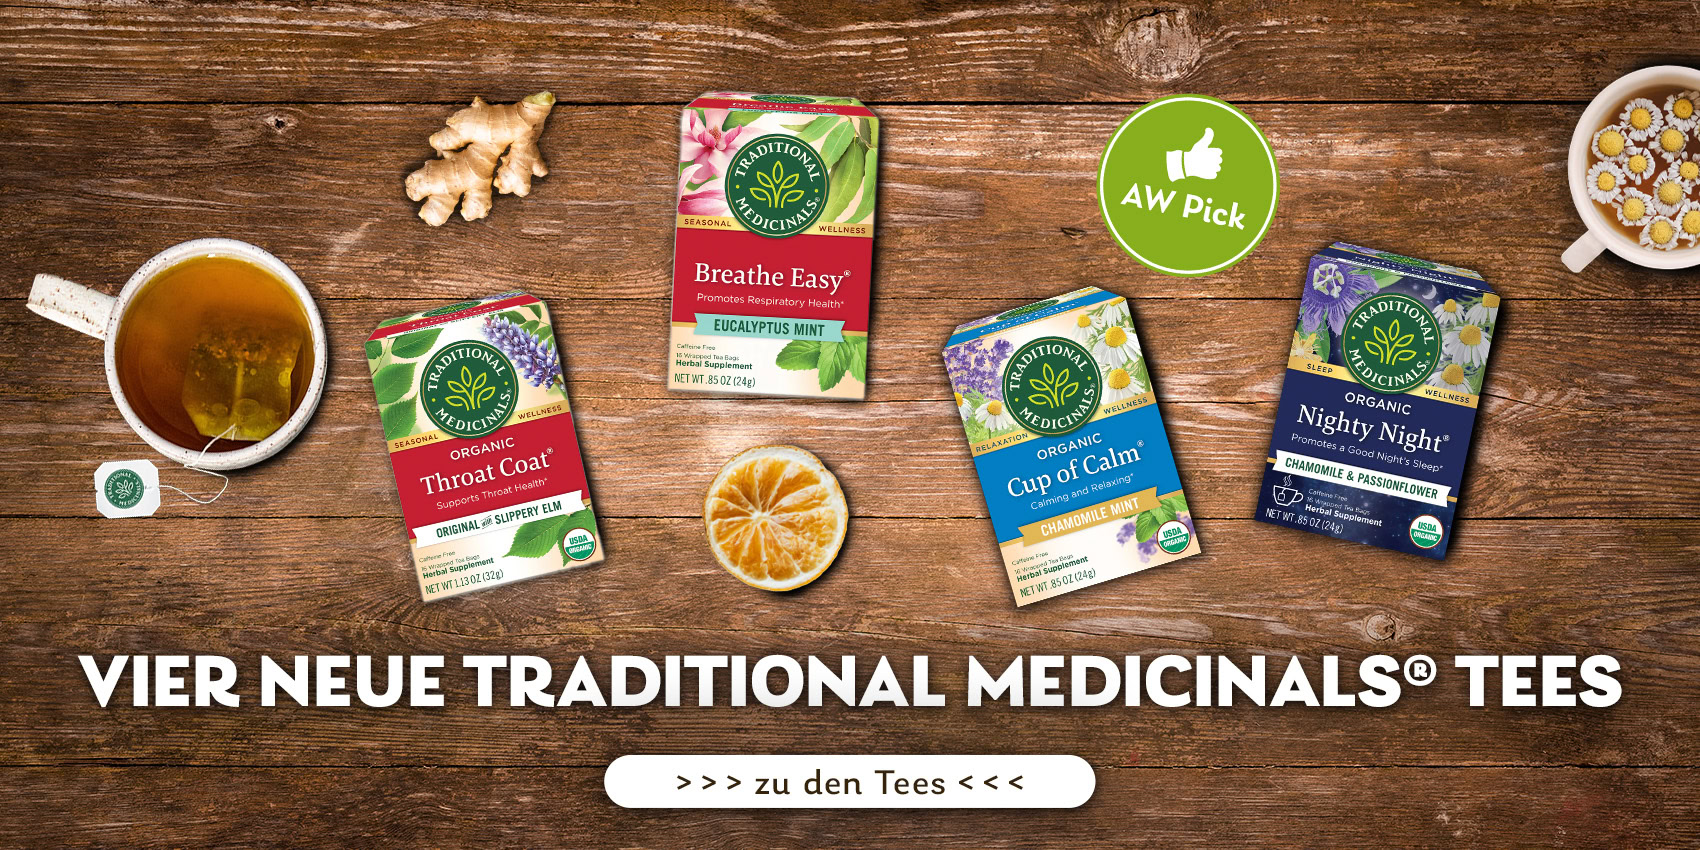 Traditional-Medicinals